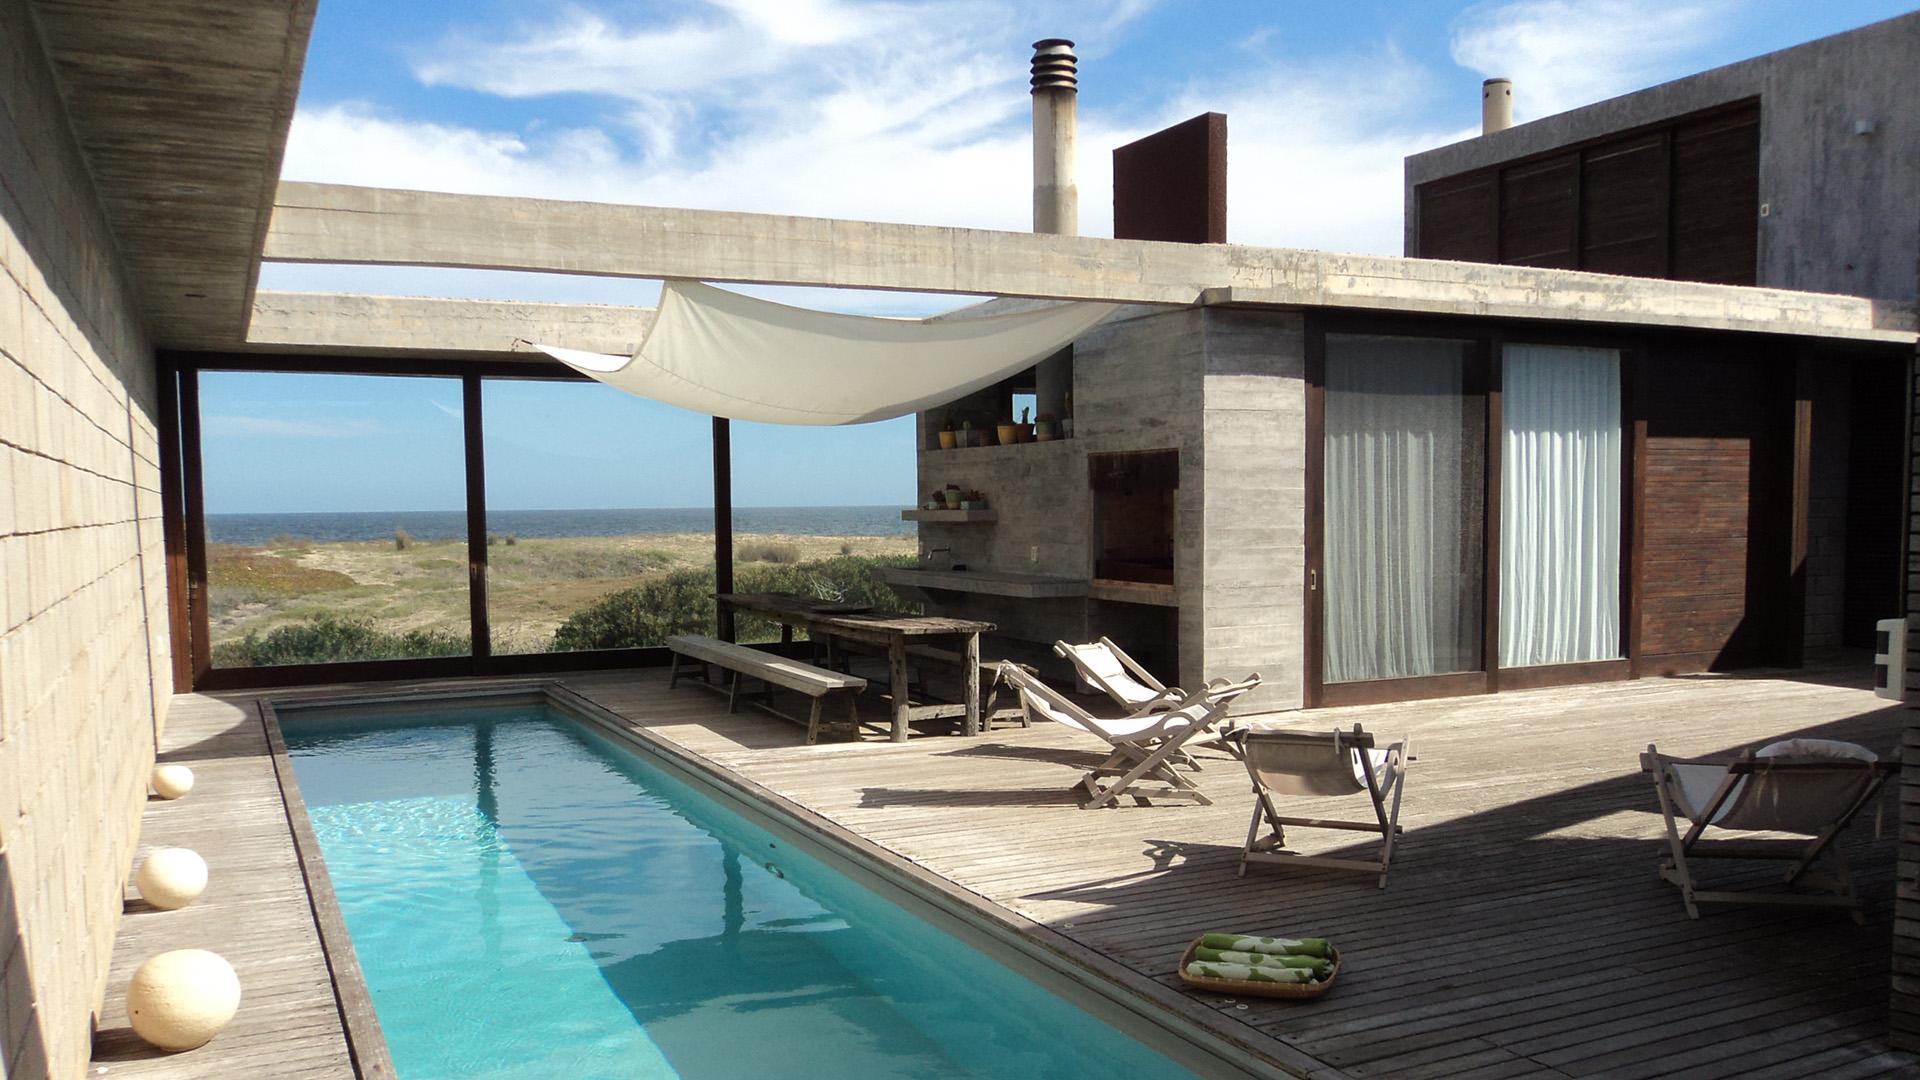 Beachfront Modern Villa located in Jose Ignacio, Punta del Este, Uruguay, listed by Curiocity Villas.